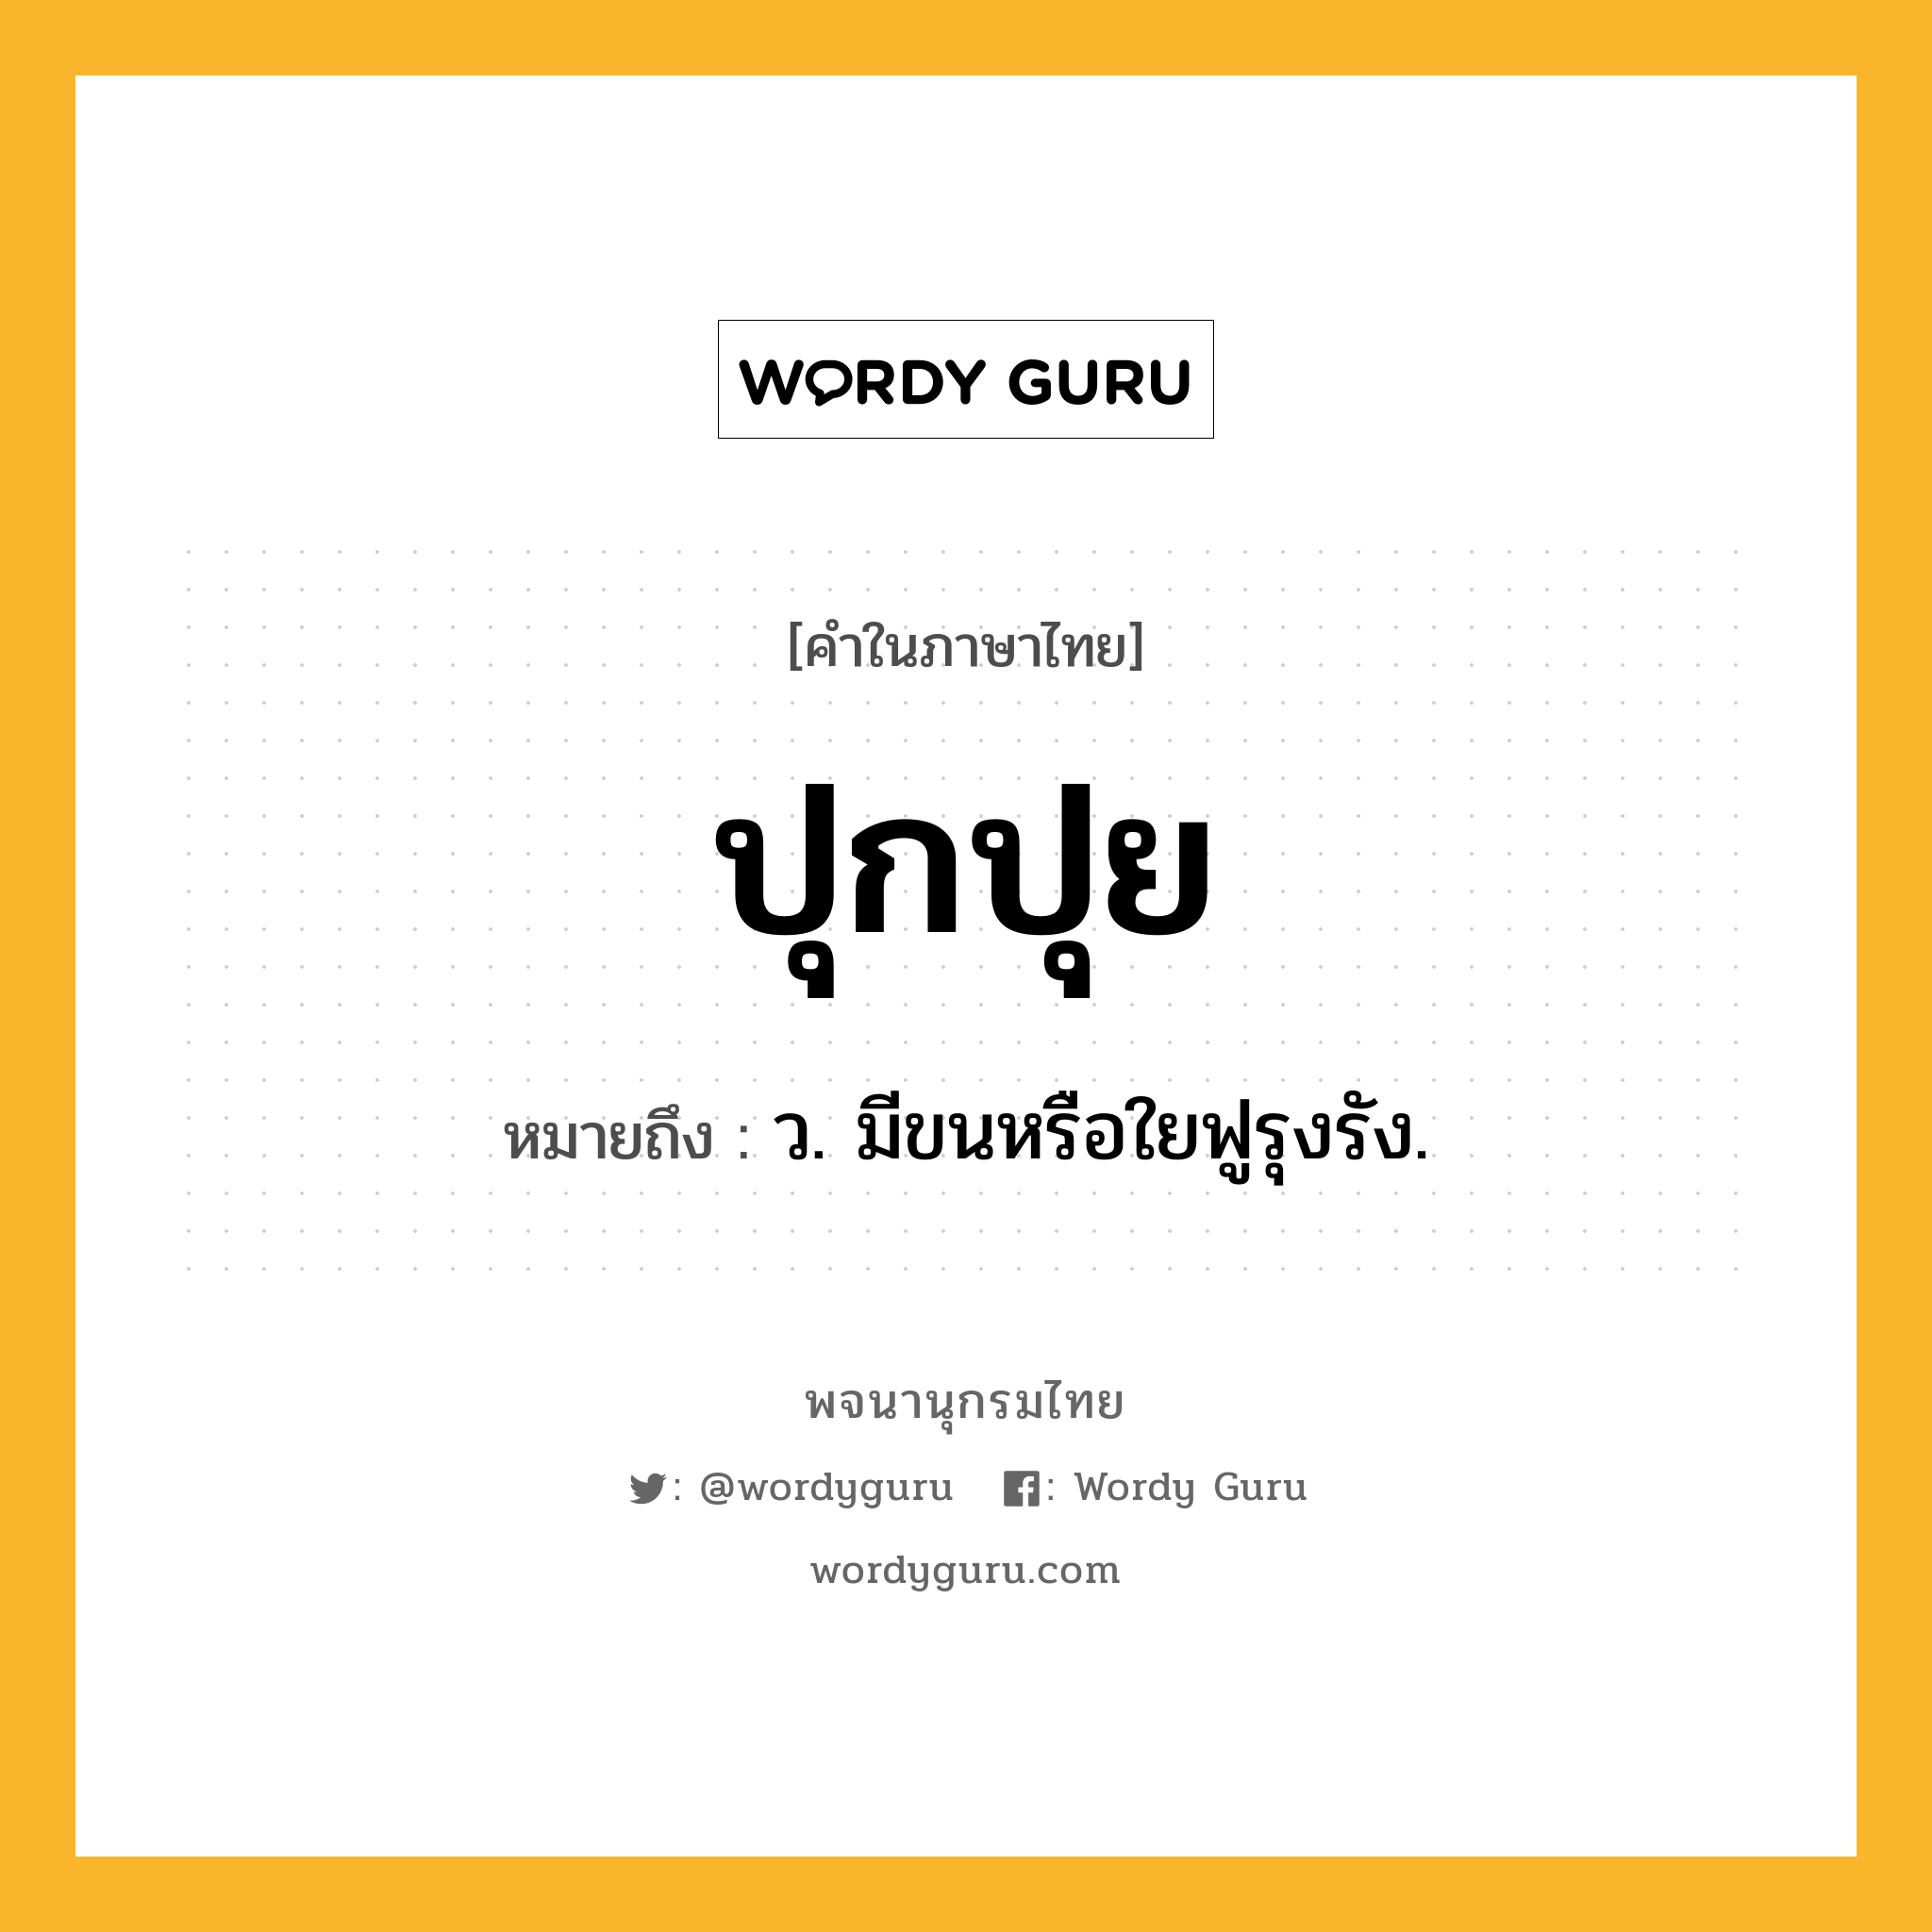 ปุกปุย ความหมาย หมายถึงอะไร?, คำในภาษาไทย ปุกปุย หมายถึง ว. มีขนหรือใยฟูรุงรัง.